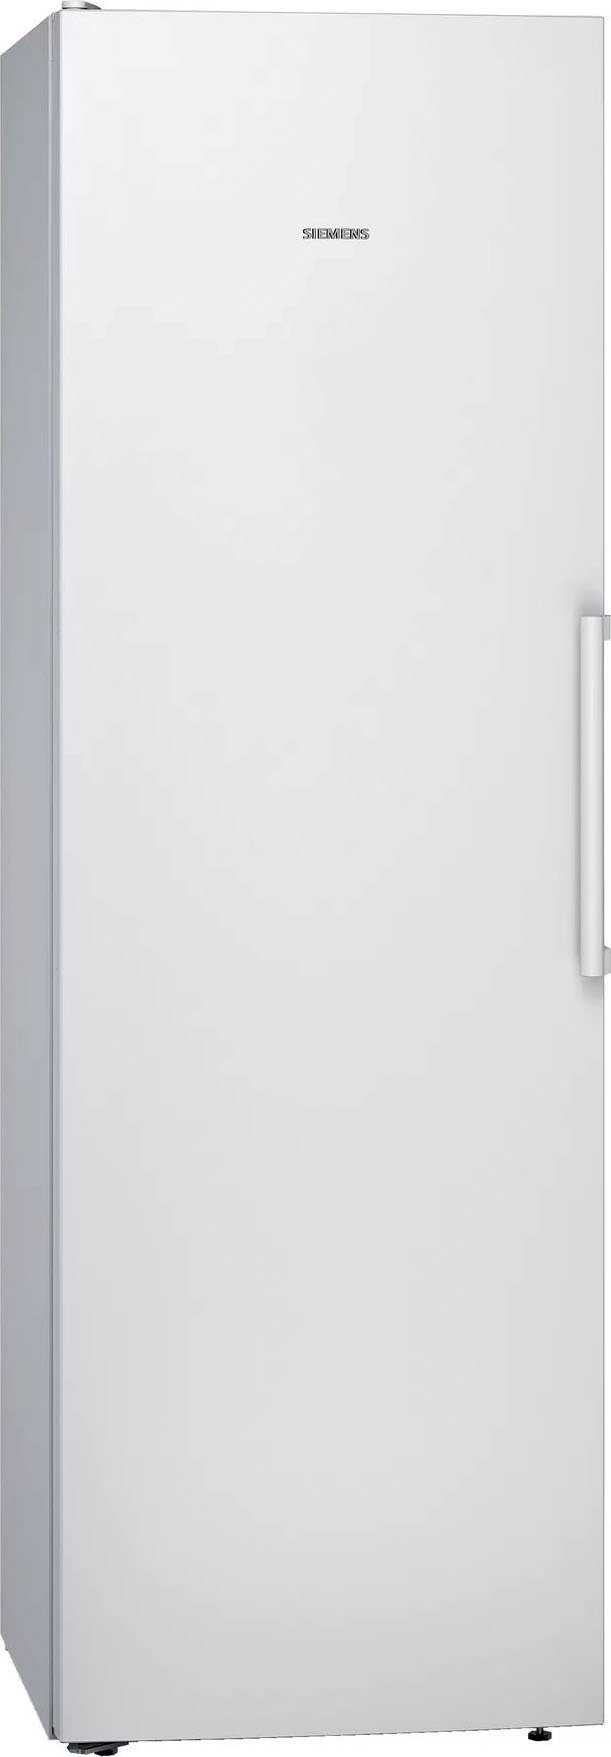 cm Kühlschrank weiß iQ300 186 60 breit KS36VVWEP, SIEMENS cm hoch,